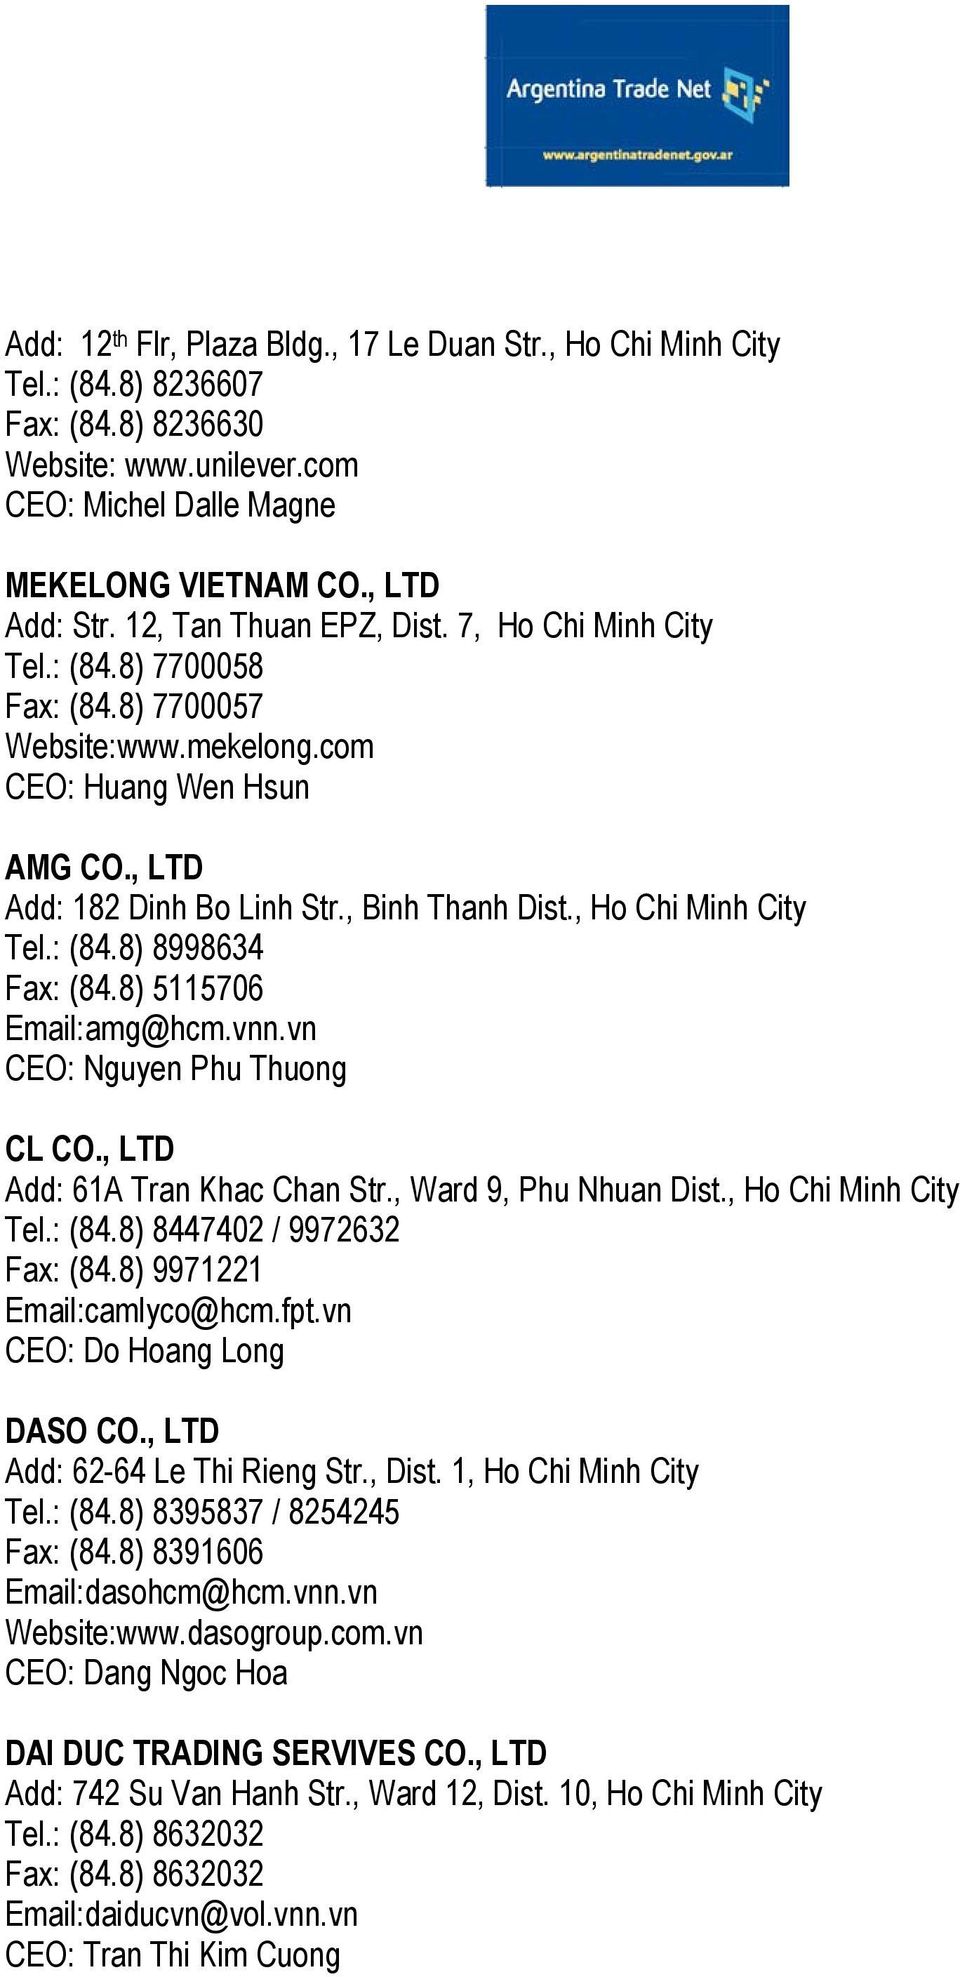 , Ho Chi Minh City Tel.: (84.8) 8998634 Fax: (84.8) 5115706 Email:amg@hcm.vnn.vn CEO: Nguyen Phu Thuong CL CO., LTD Add: 61A Tran Khac Chan Str., Ward 9, Phu Nhuan Dist., Ho Chi Minh City Tel.: (84.8) 8447402 / 9972632 Fax: (84.